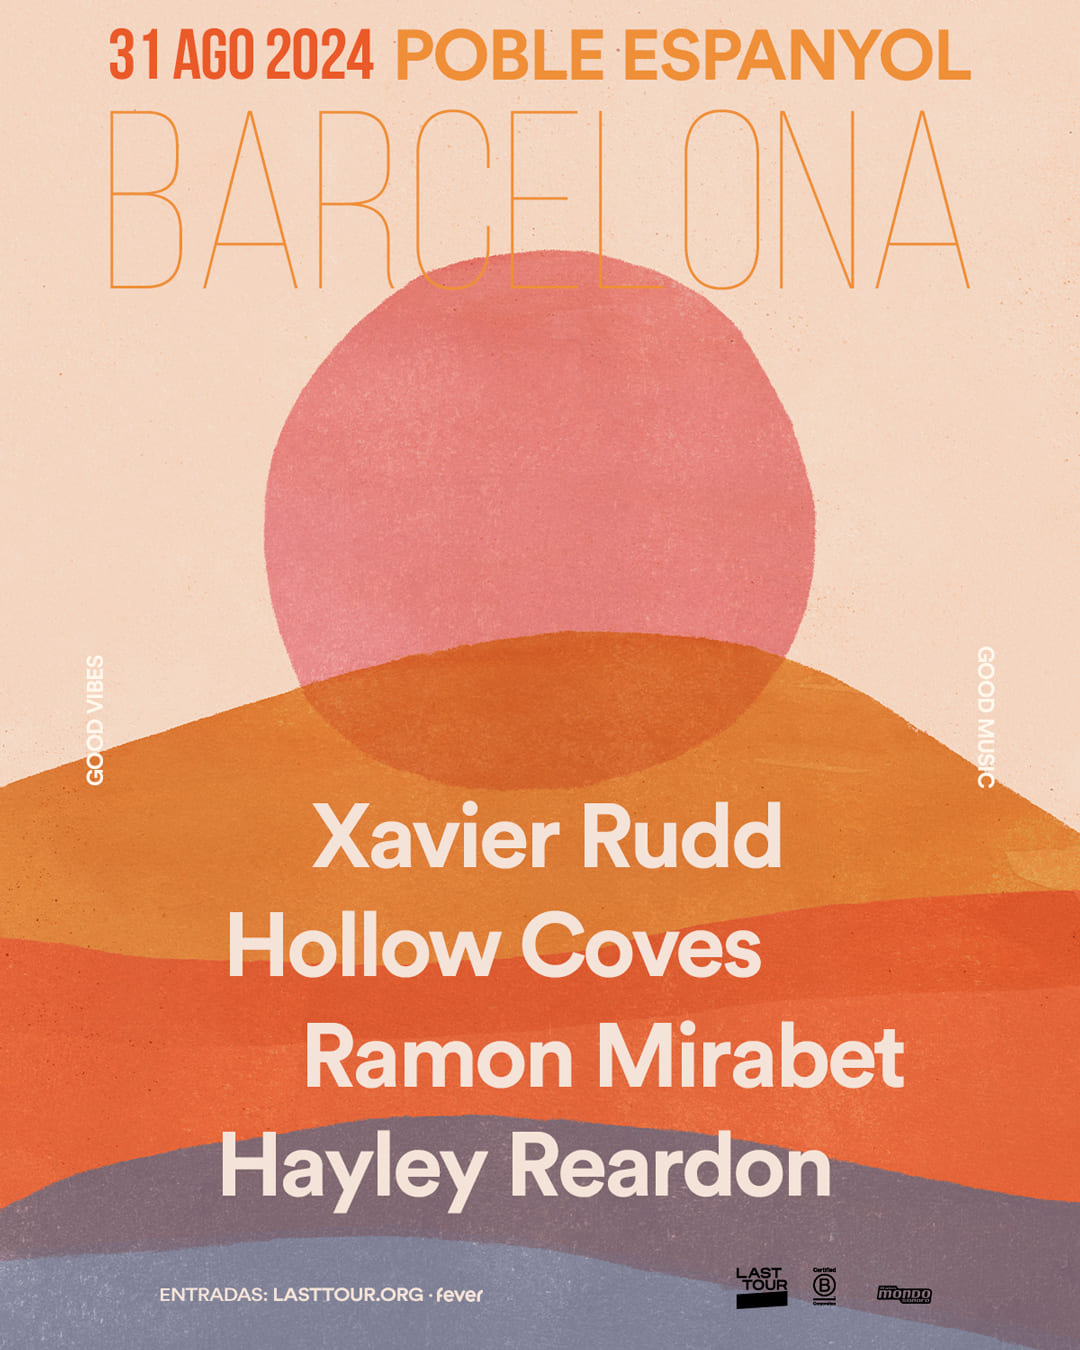 Xavier Rudd, Hollow Coves, Ramon Mirabet y Hayley Reardon actuarán en el Poble Espanyol en Barcelona